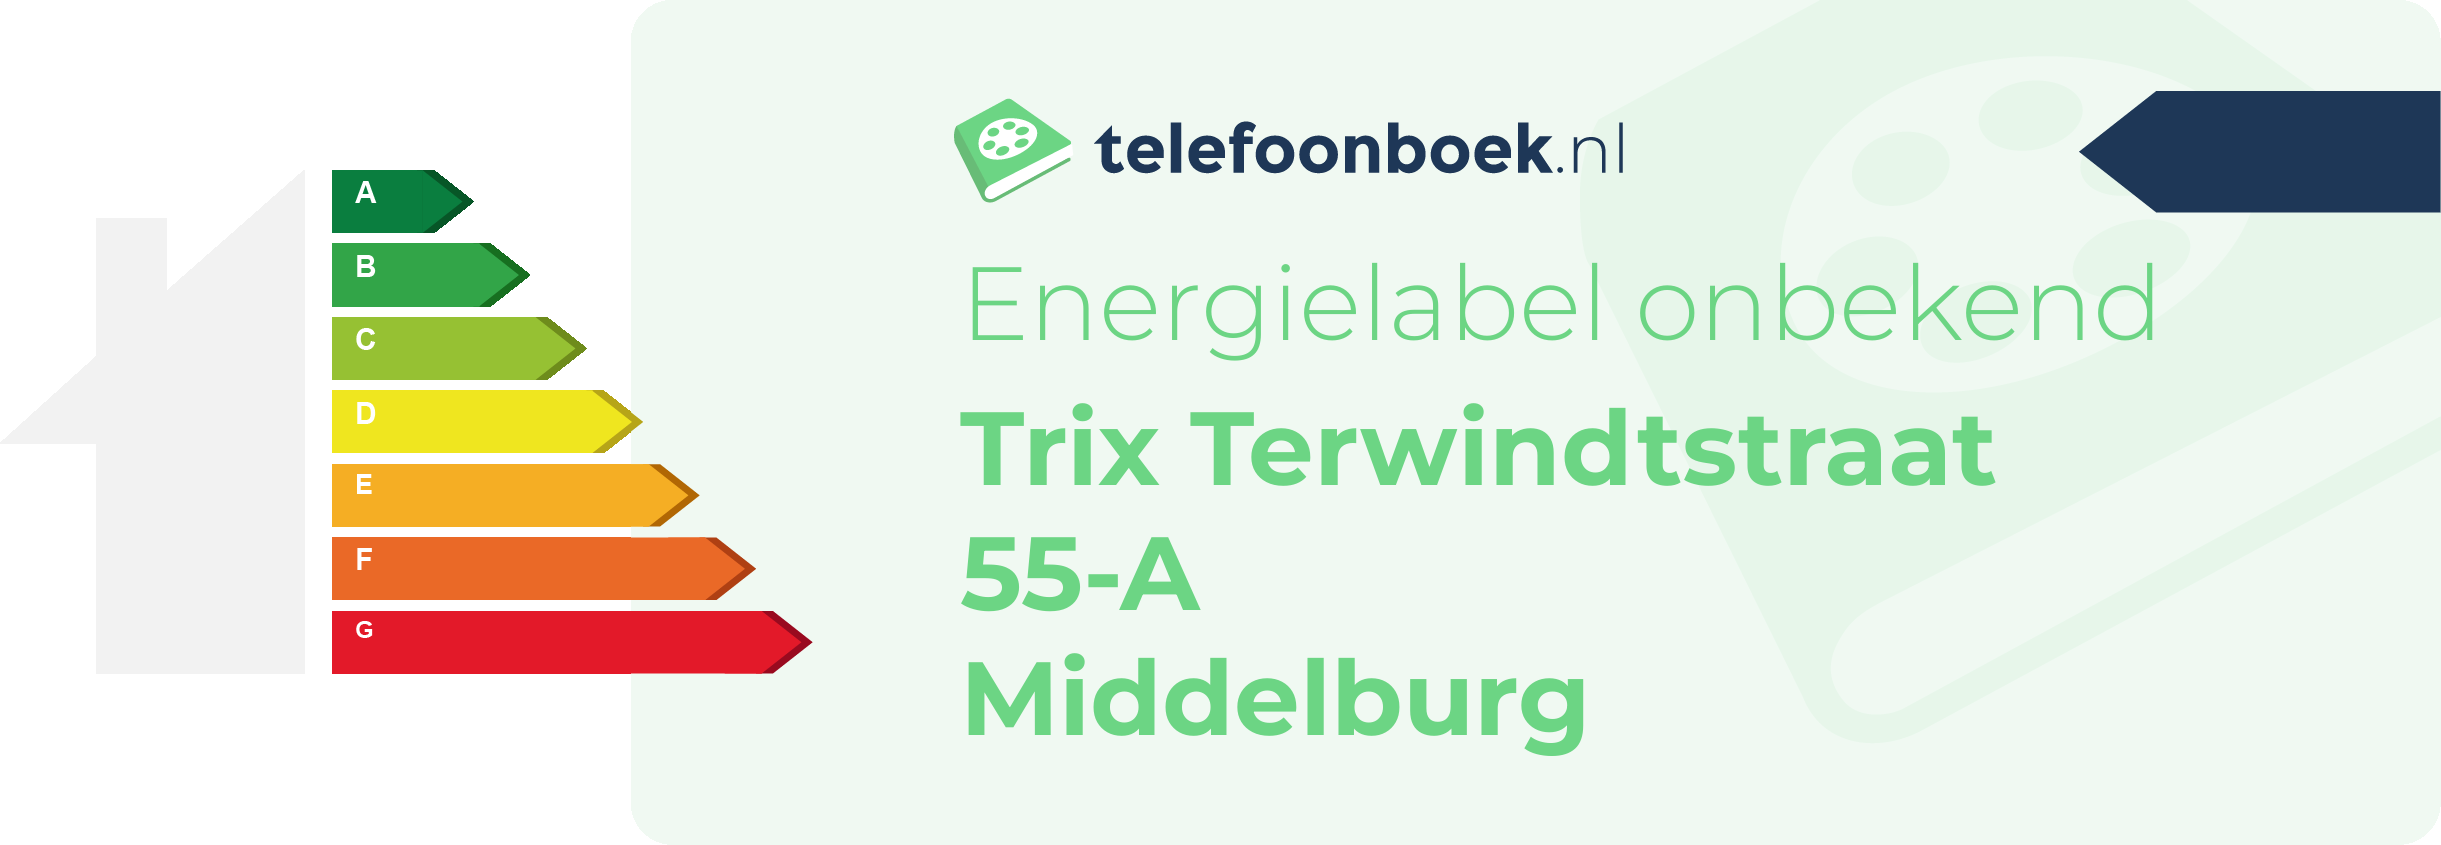 Energielabel Trix Terwindtstraat 55-A Middelburg